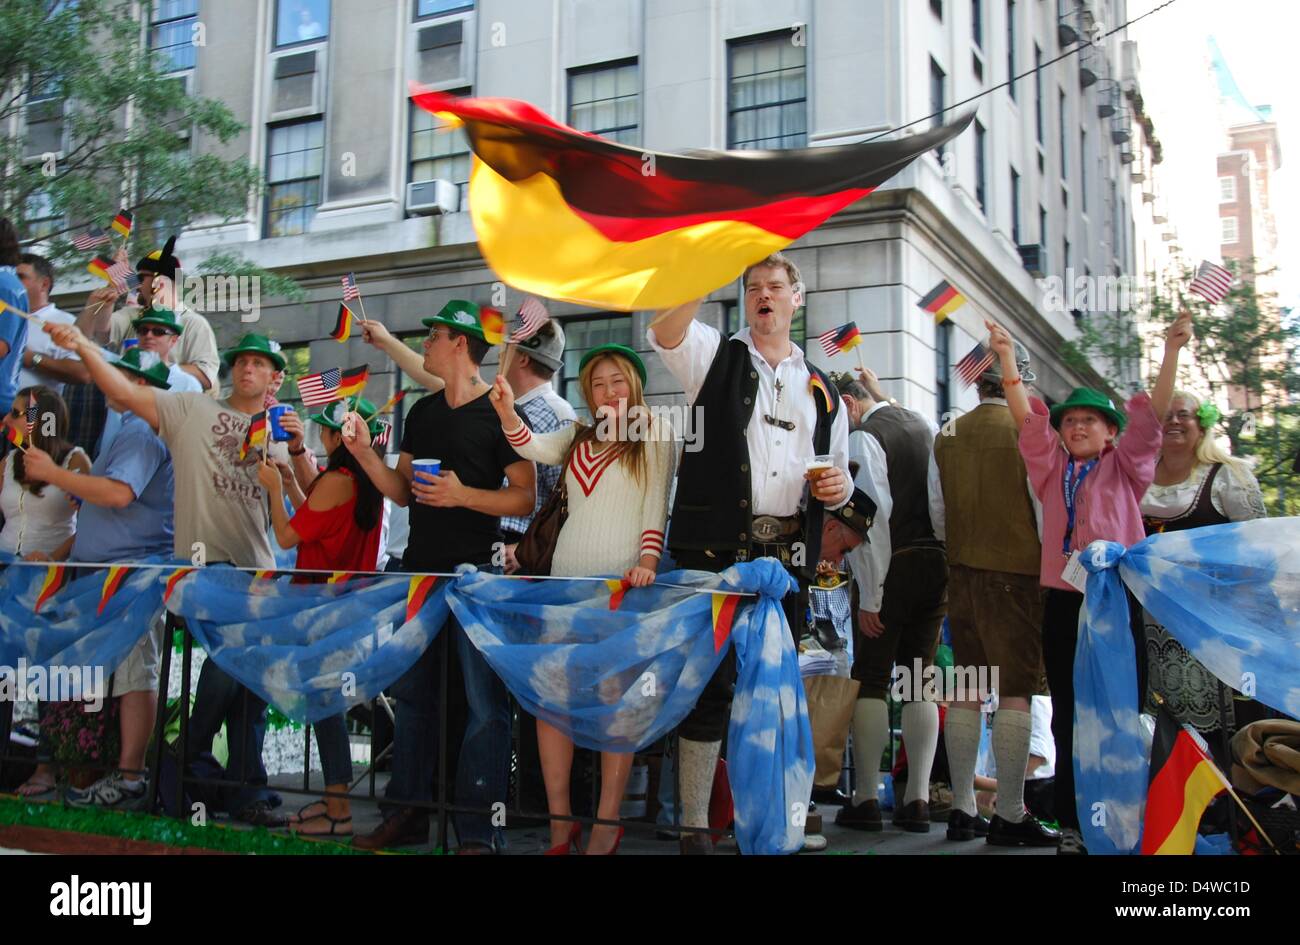 Teilnehmer der Steuben-Parade winken mit deutschen und US-Fähnchen von einem Wagen, am Samstag (25.09.2010) a New York. Die Steuben-Parade in New York hat wieder zehntausende Zuschauer begeistert. Mit der jährlichen Parade soll die Kultur der deutschen Einwanderer bewahrt werden. (Zu dpa-KORR '"Deutschland ist cool!": New York feiert Steuben-Parade' vom 26.09.2010) Foto: Chris Mel Foto Stock